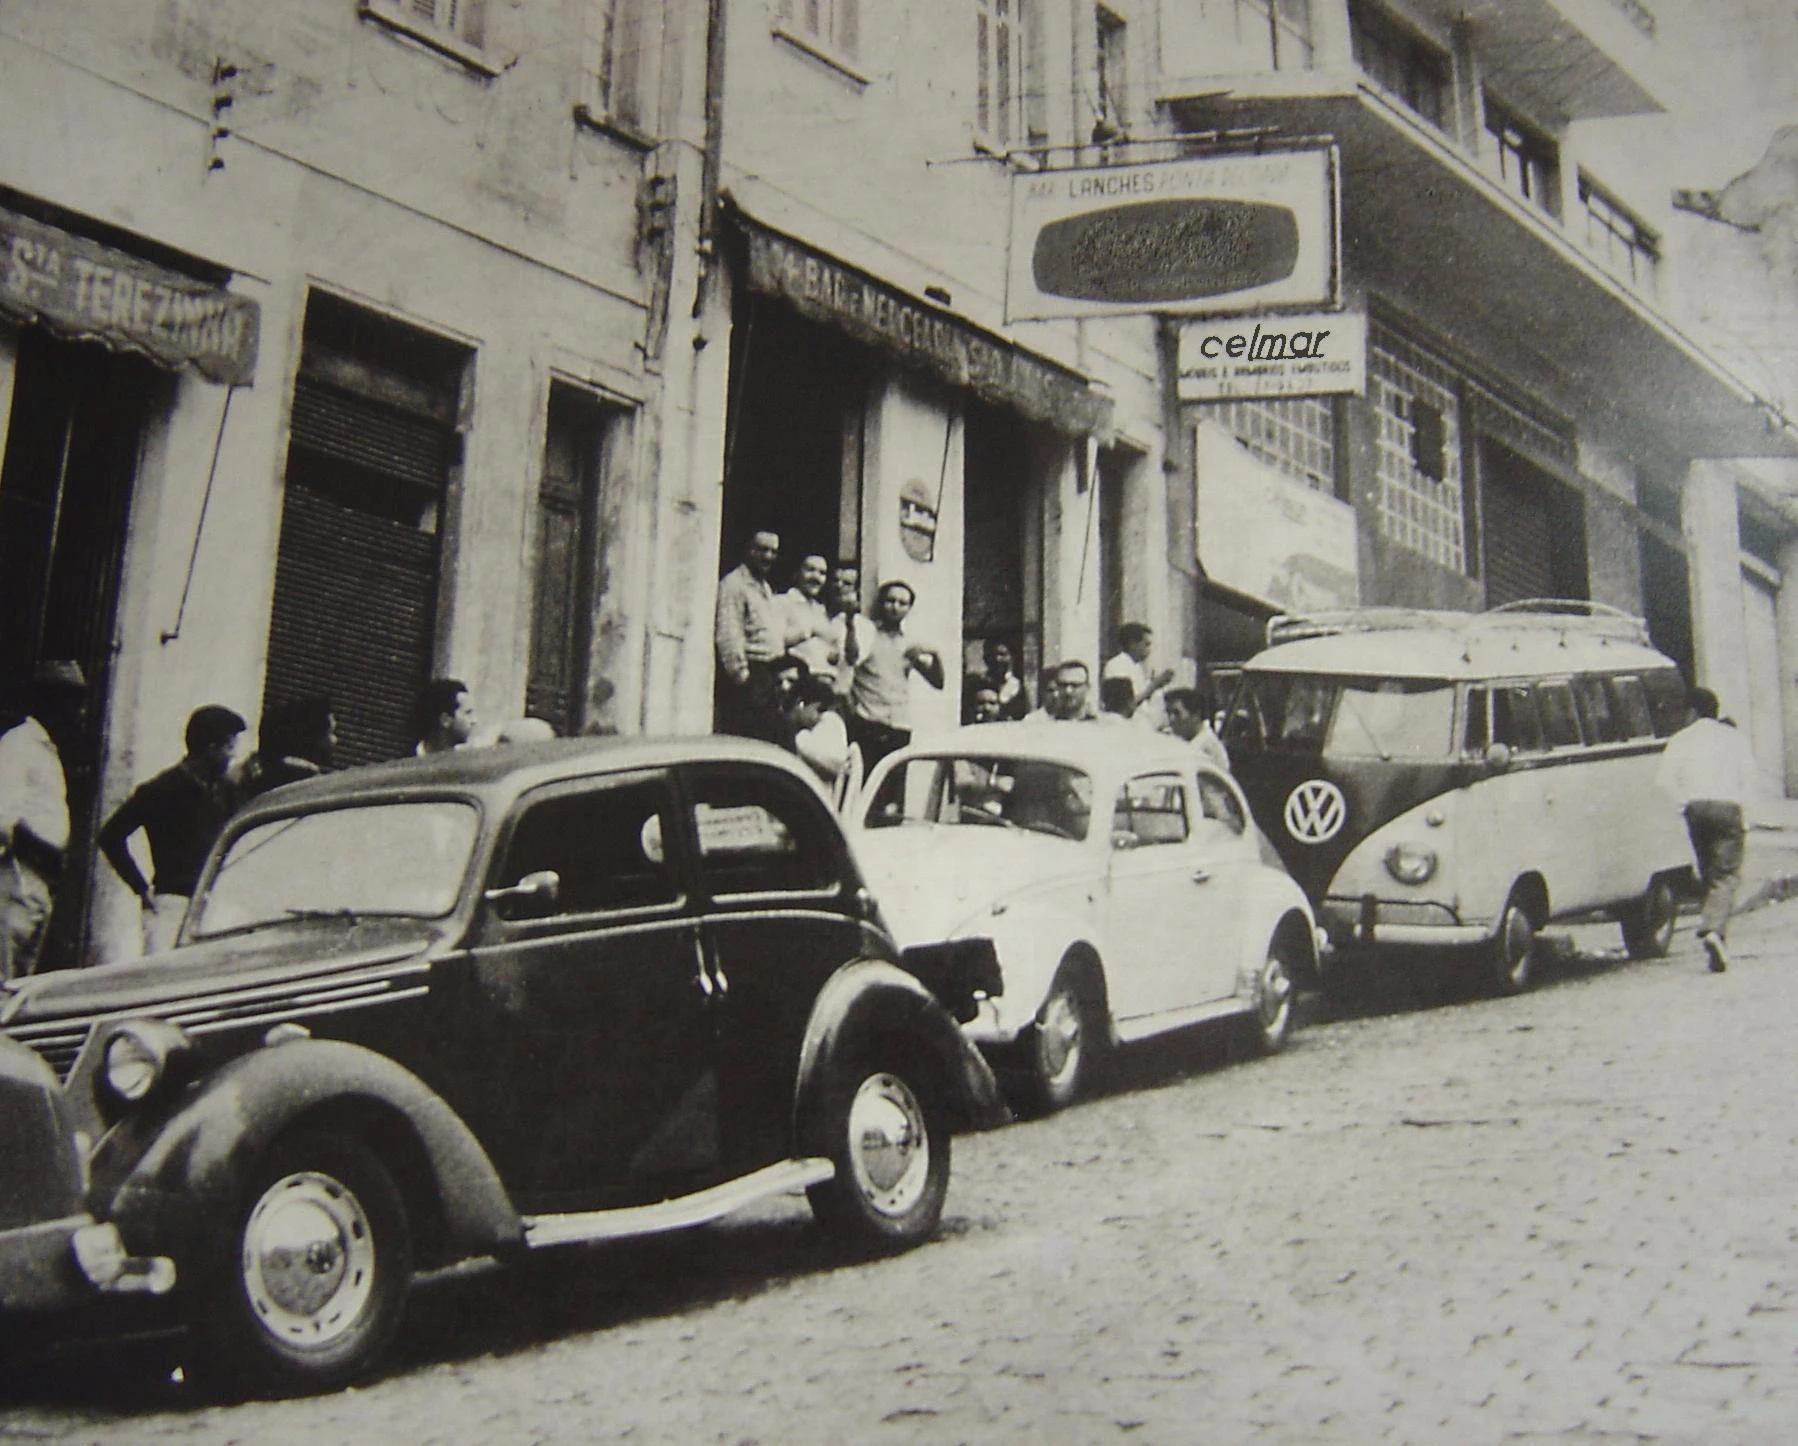 Imagem da fachada da Celmar em 1958, com carros antigos na frente.